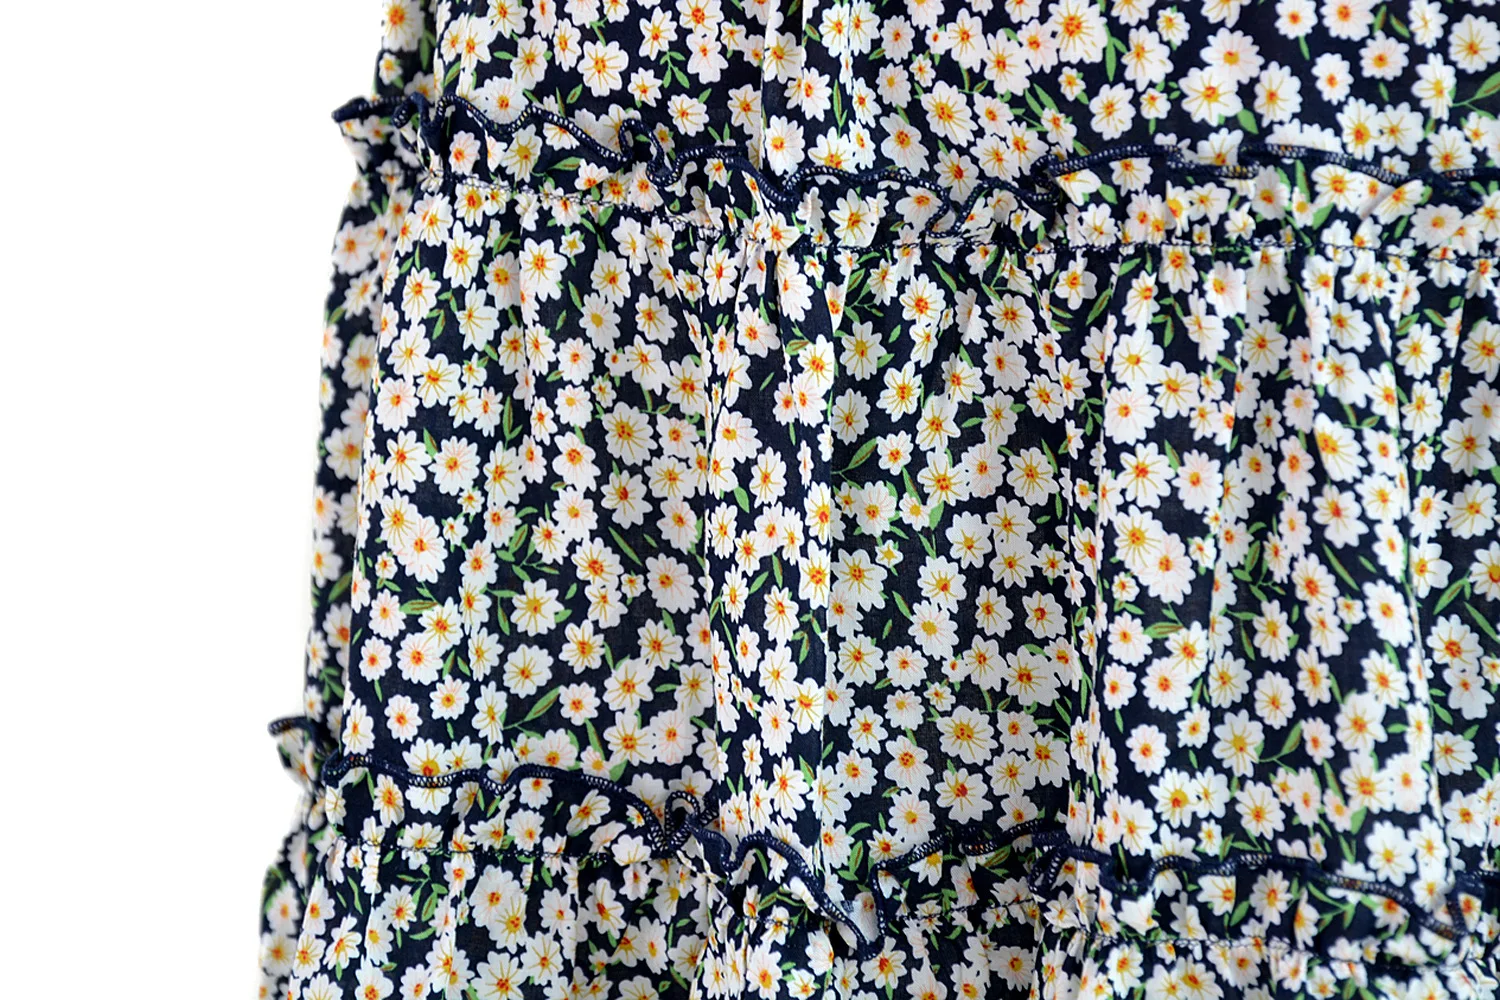 Женская юбка с завышенной талией в виде листьев лотоса, длиной до середины голени, с принтом, Пляжная трапециевидная короткая юбка